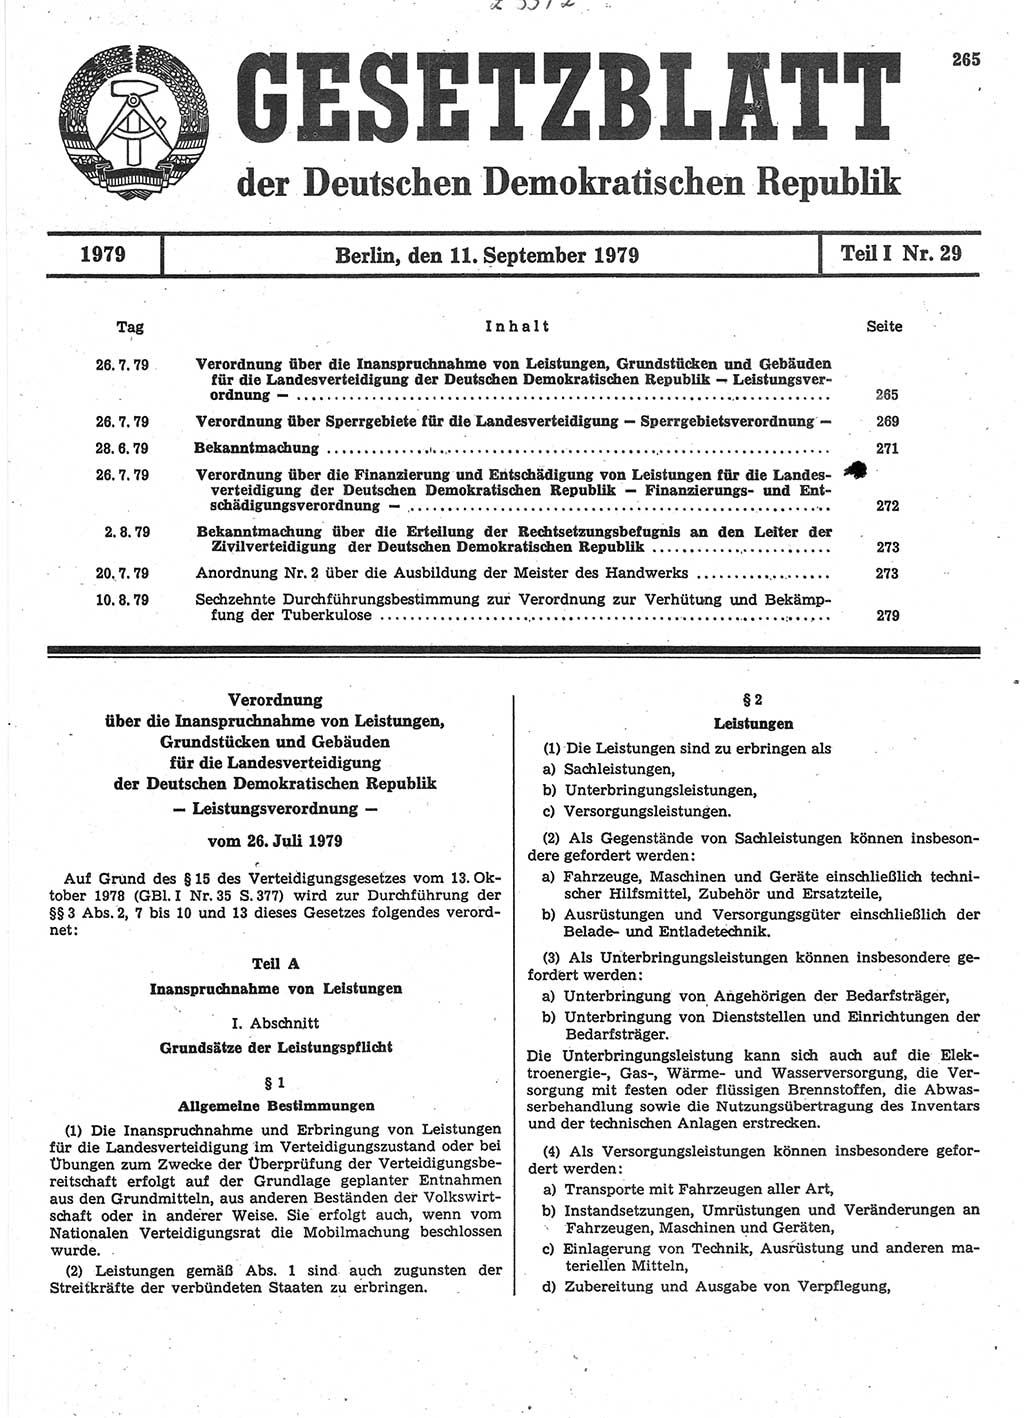 Gesetzblatt (GBl.) der Deutschen Demokratischen Republik (DDR) Teil Ⅰ 1979, Seite 265 (GBl. DDR Ⅰ 1979, S. 265)